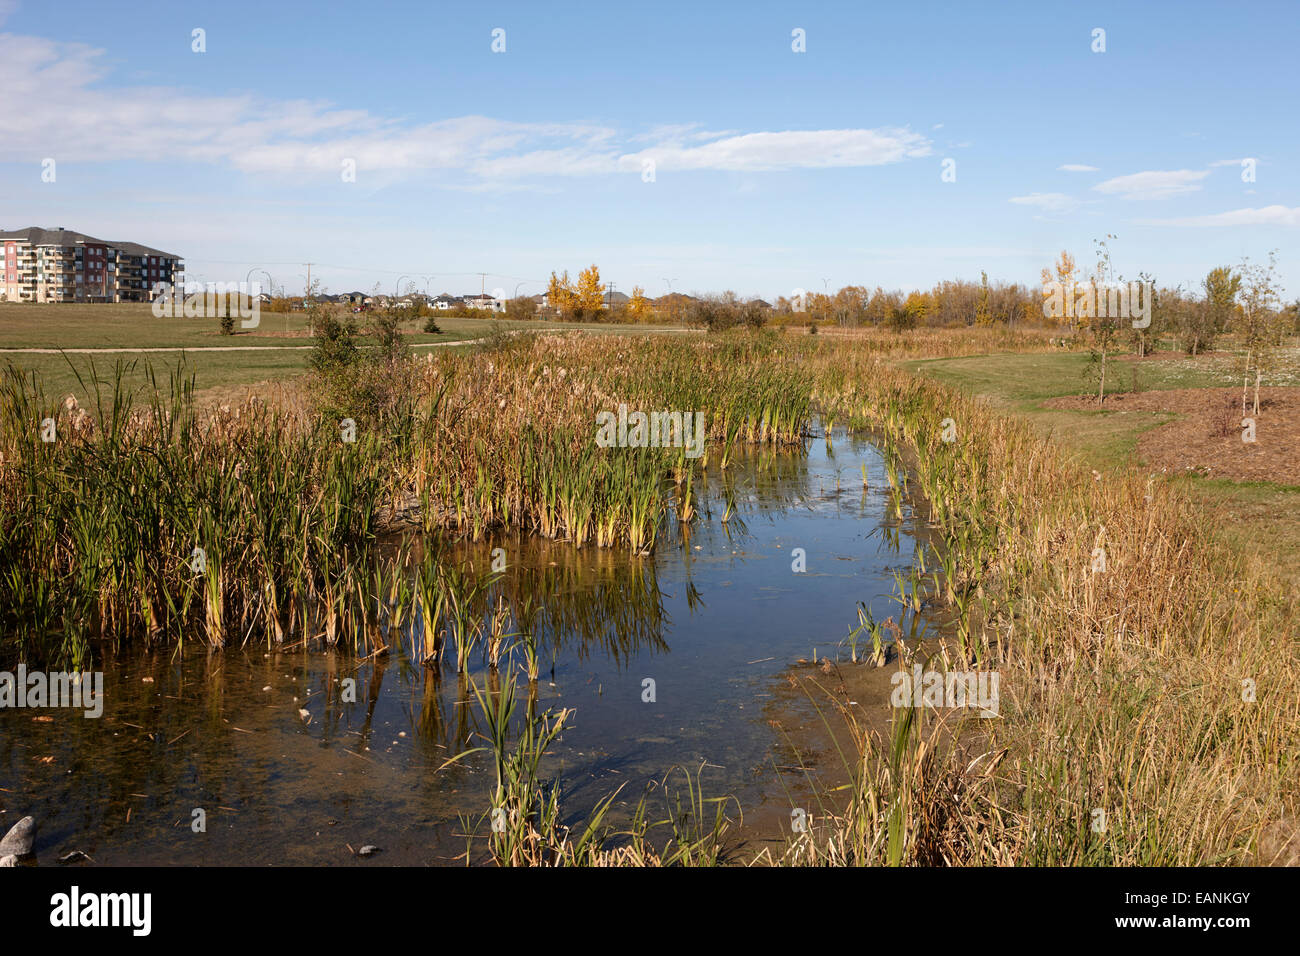 managed lakeland habitat area landscaped protected suburb saskatoon Saskatchewan Canada Stock Photo